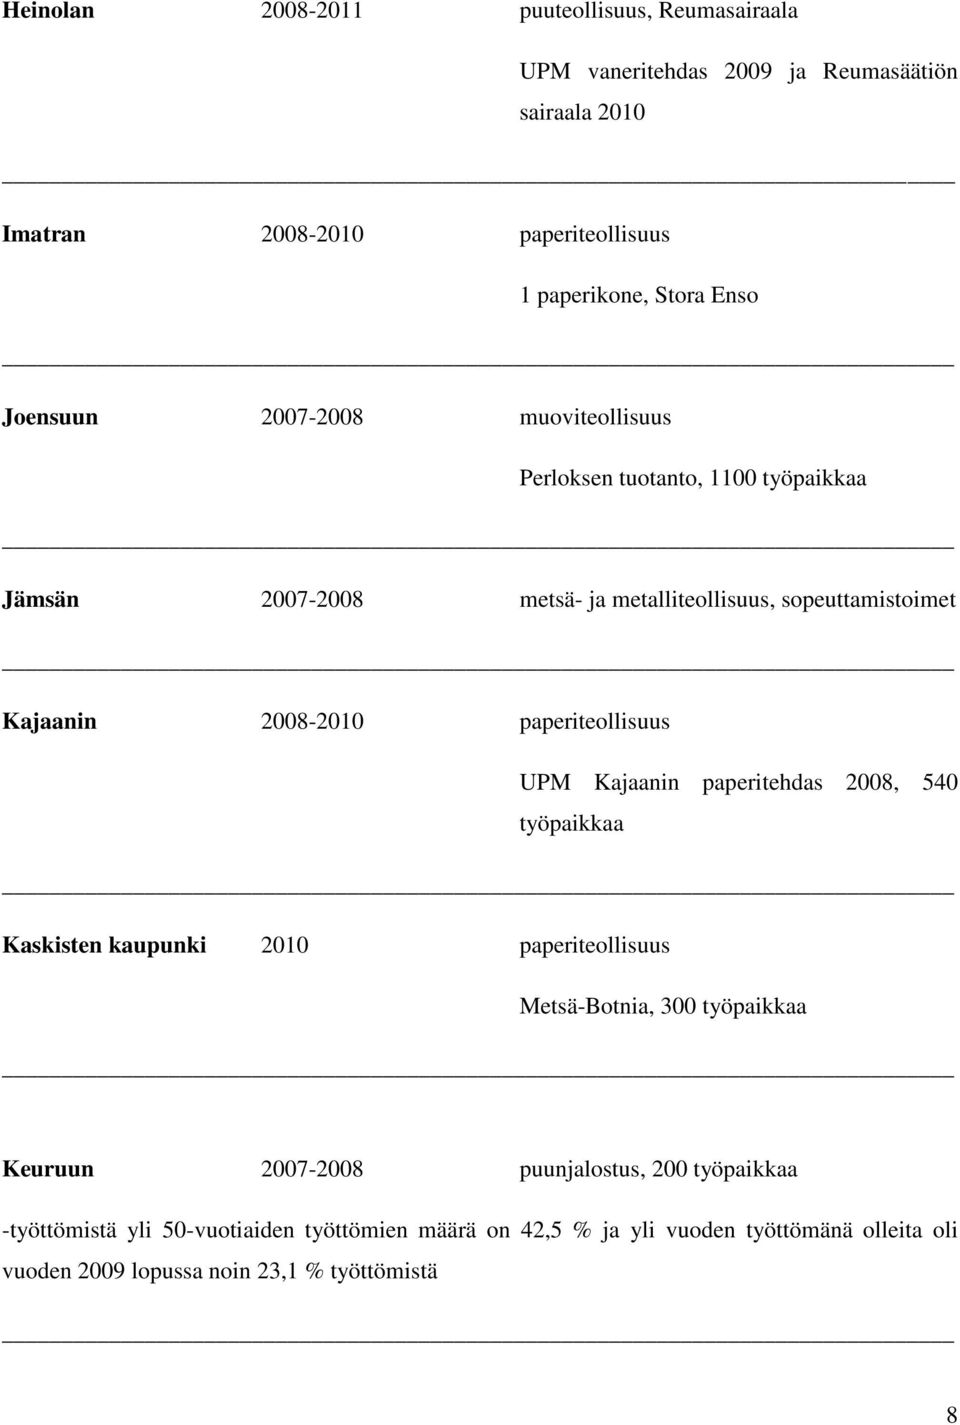 paperiteollisuus UPM Kajaanin paperitehdas 2008, 540 työpaikkaa Kaskisten kaupunki 2010 paperiteollisuus Metsä-Botnia, 300 työpaikkaa Keuruun 2007-2008